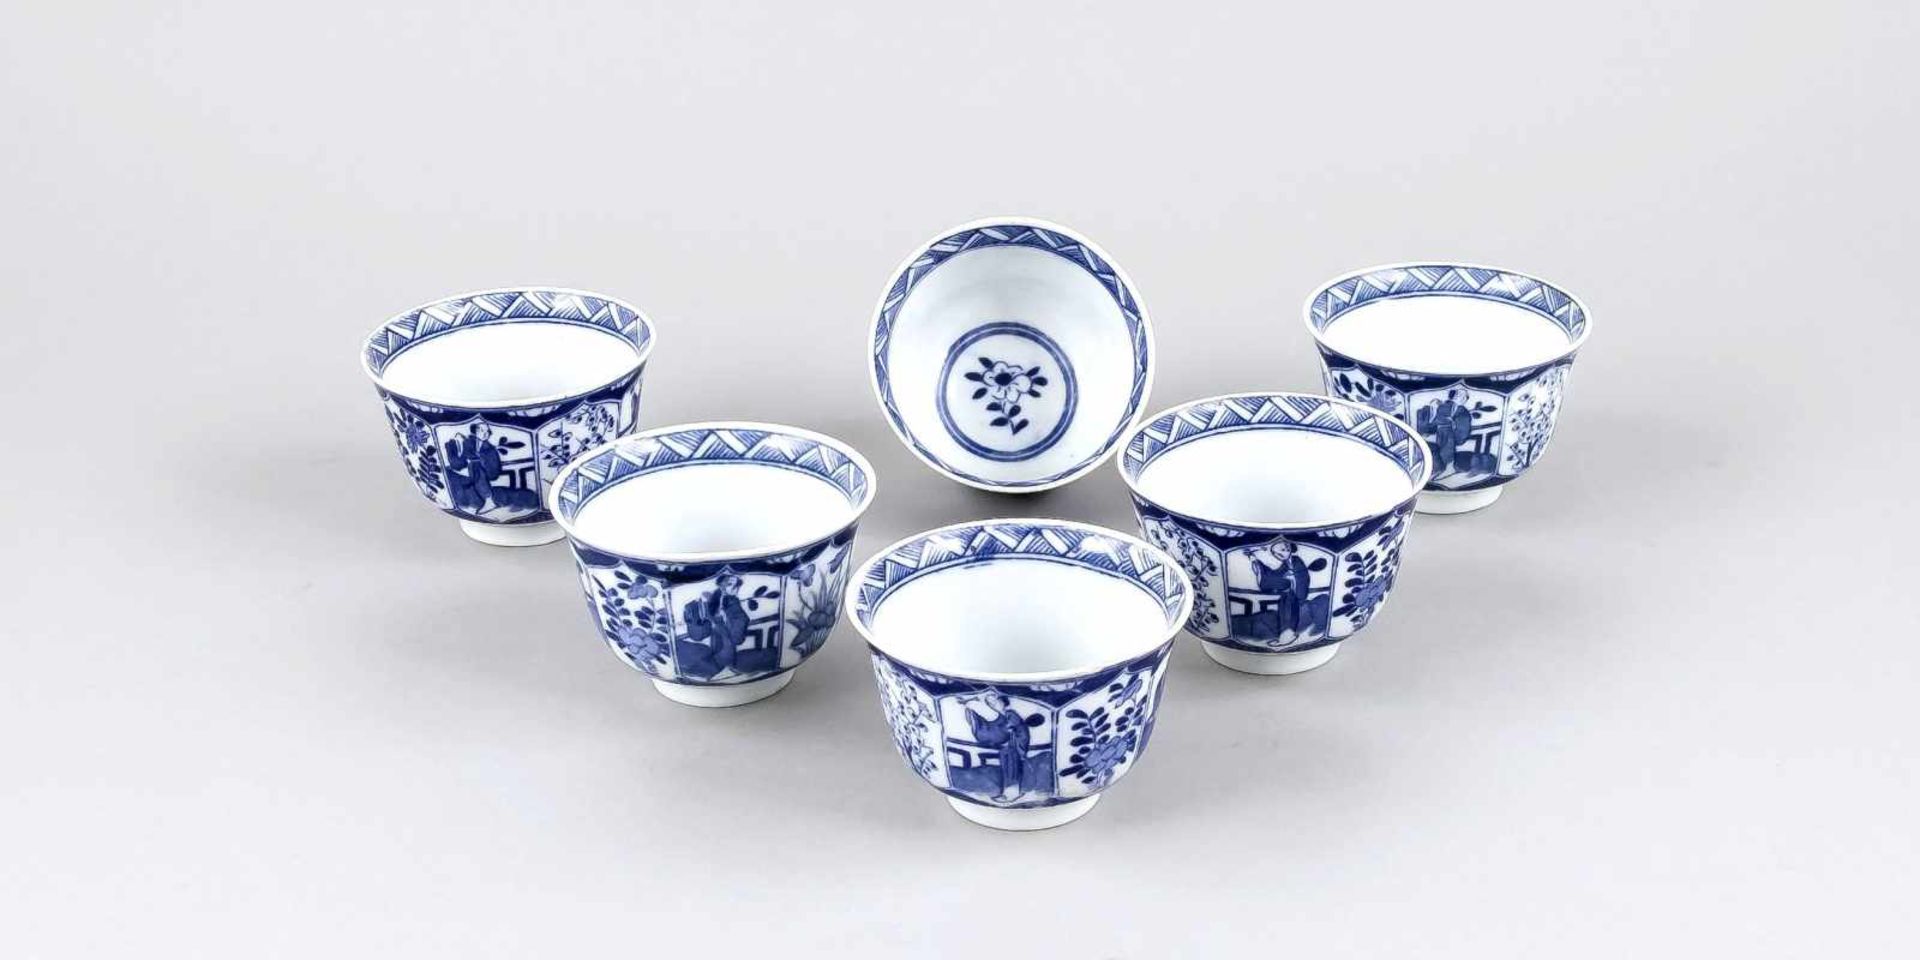 6 Blau-Weiß Koppchen, China, 19. Jh., Porzellan mit unterglasurblauer Bemalung, bauchigeForm mit